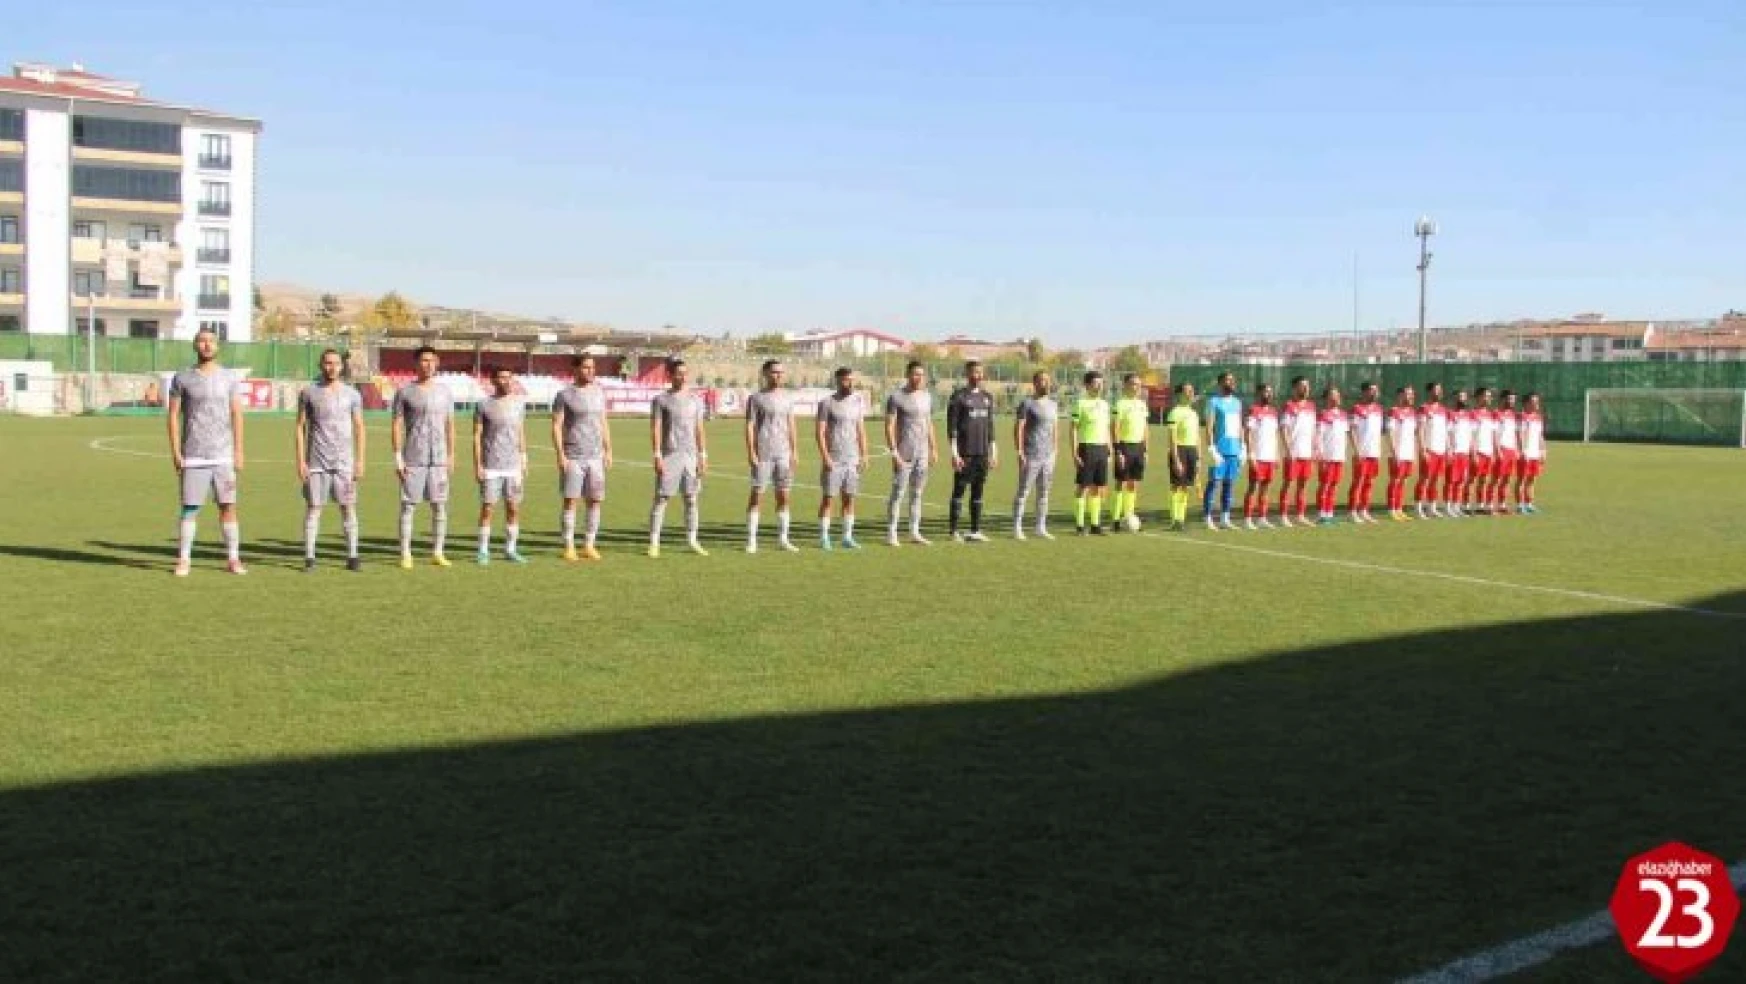 ES Elazığspor Kocaeli'de, 23 Elazığ FK evinde oynayacak